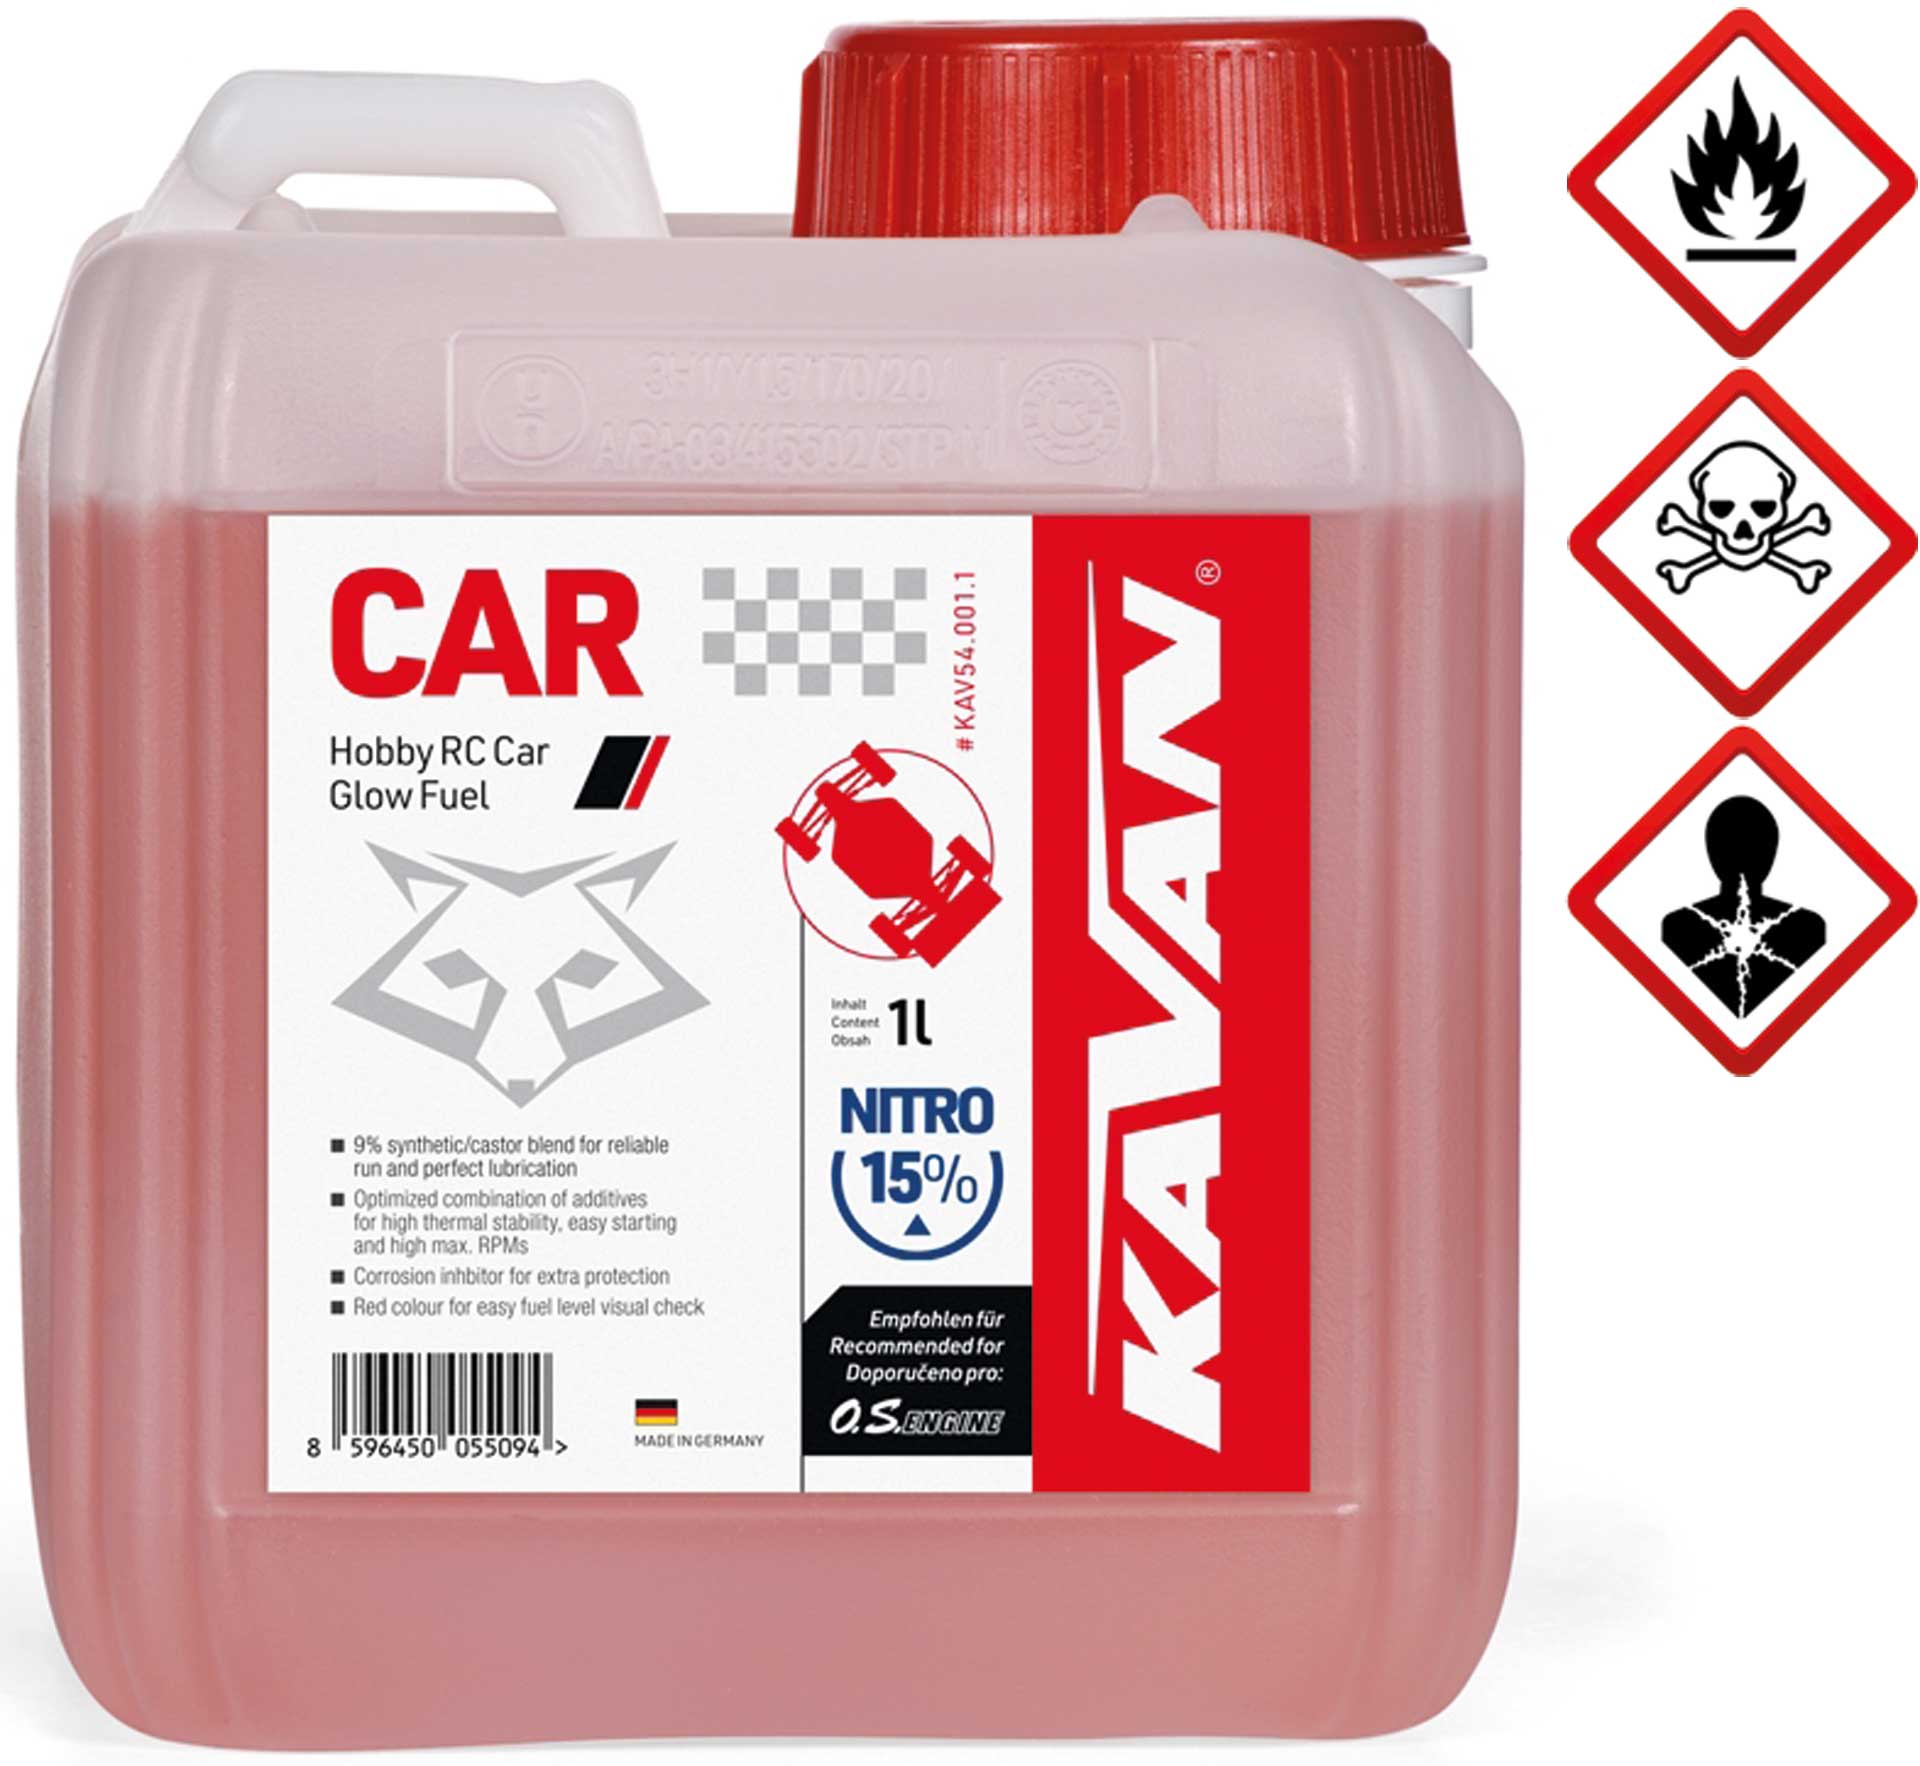 KAVAN Car 15% nitro 1 litre de carburant, carburant, Carburant pour moteurs à allumage par incandescence